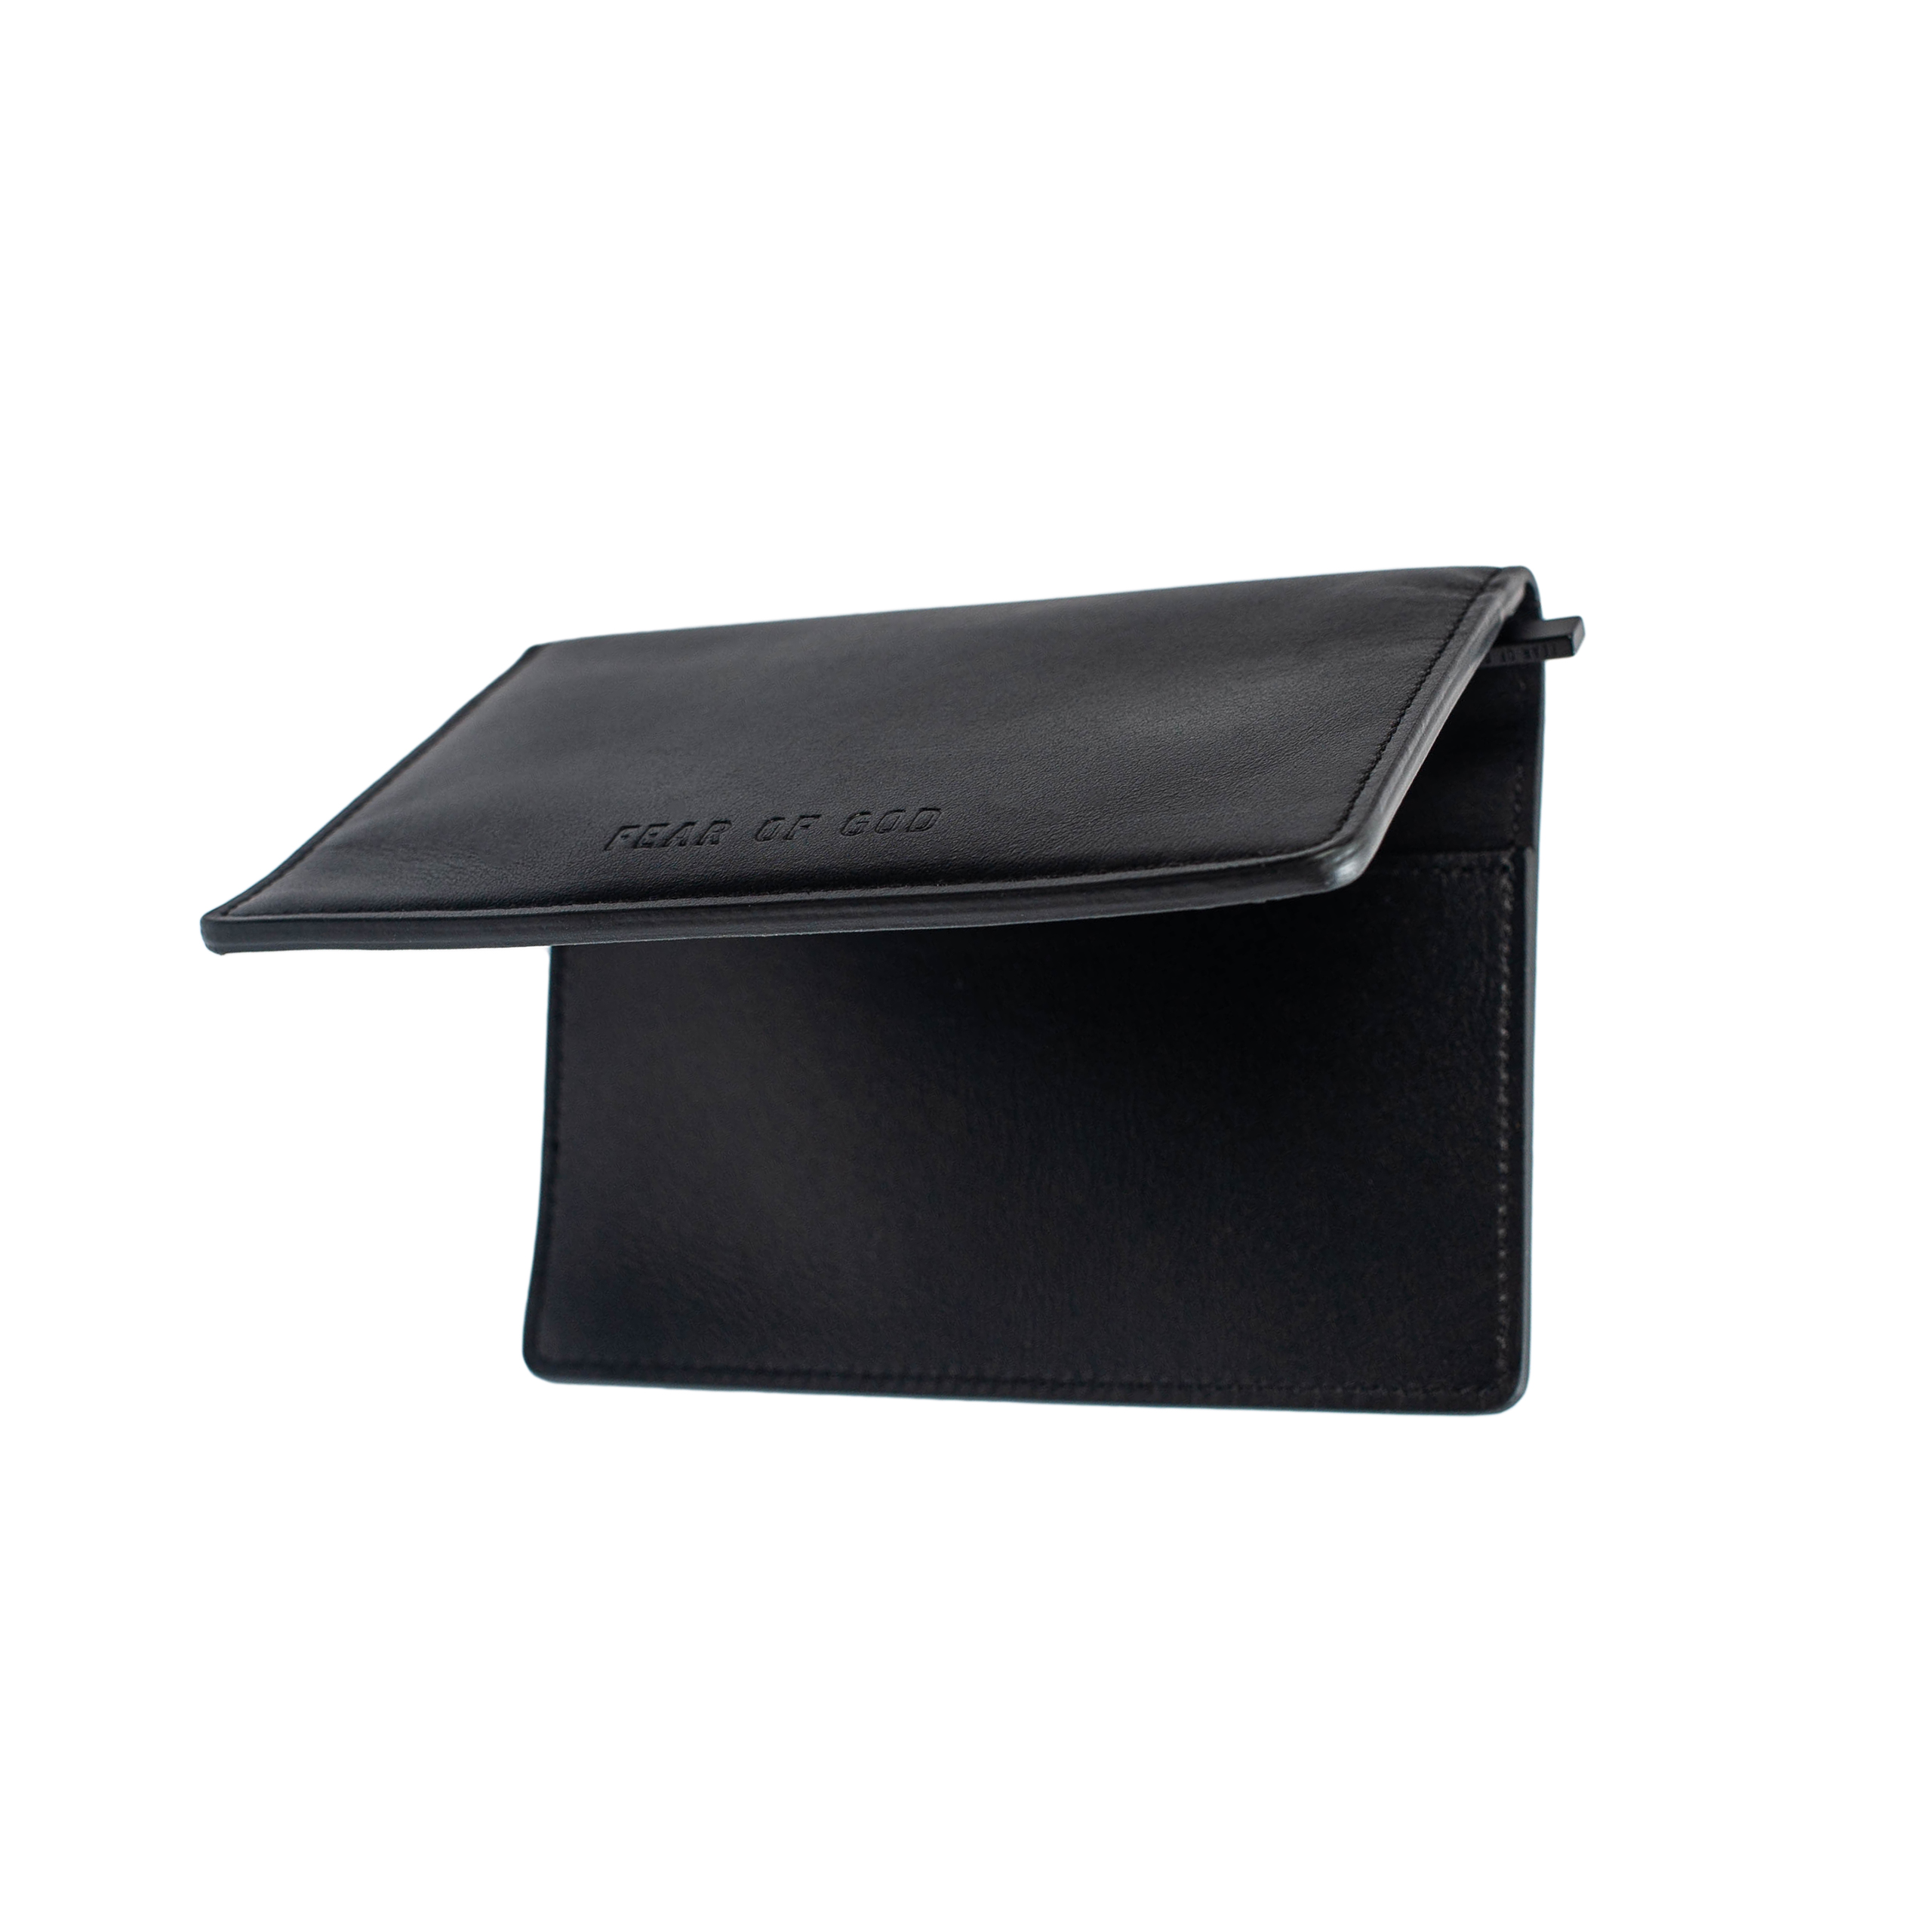 Buy Fear of God men black leather case for €465 online on SV77 ...